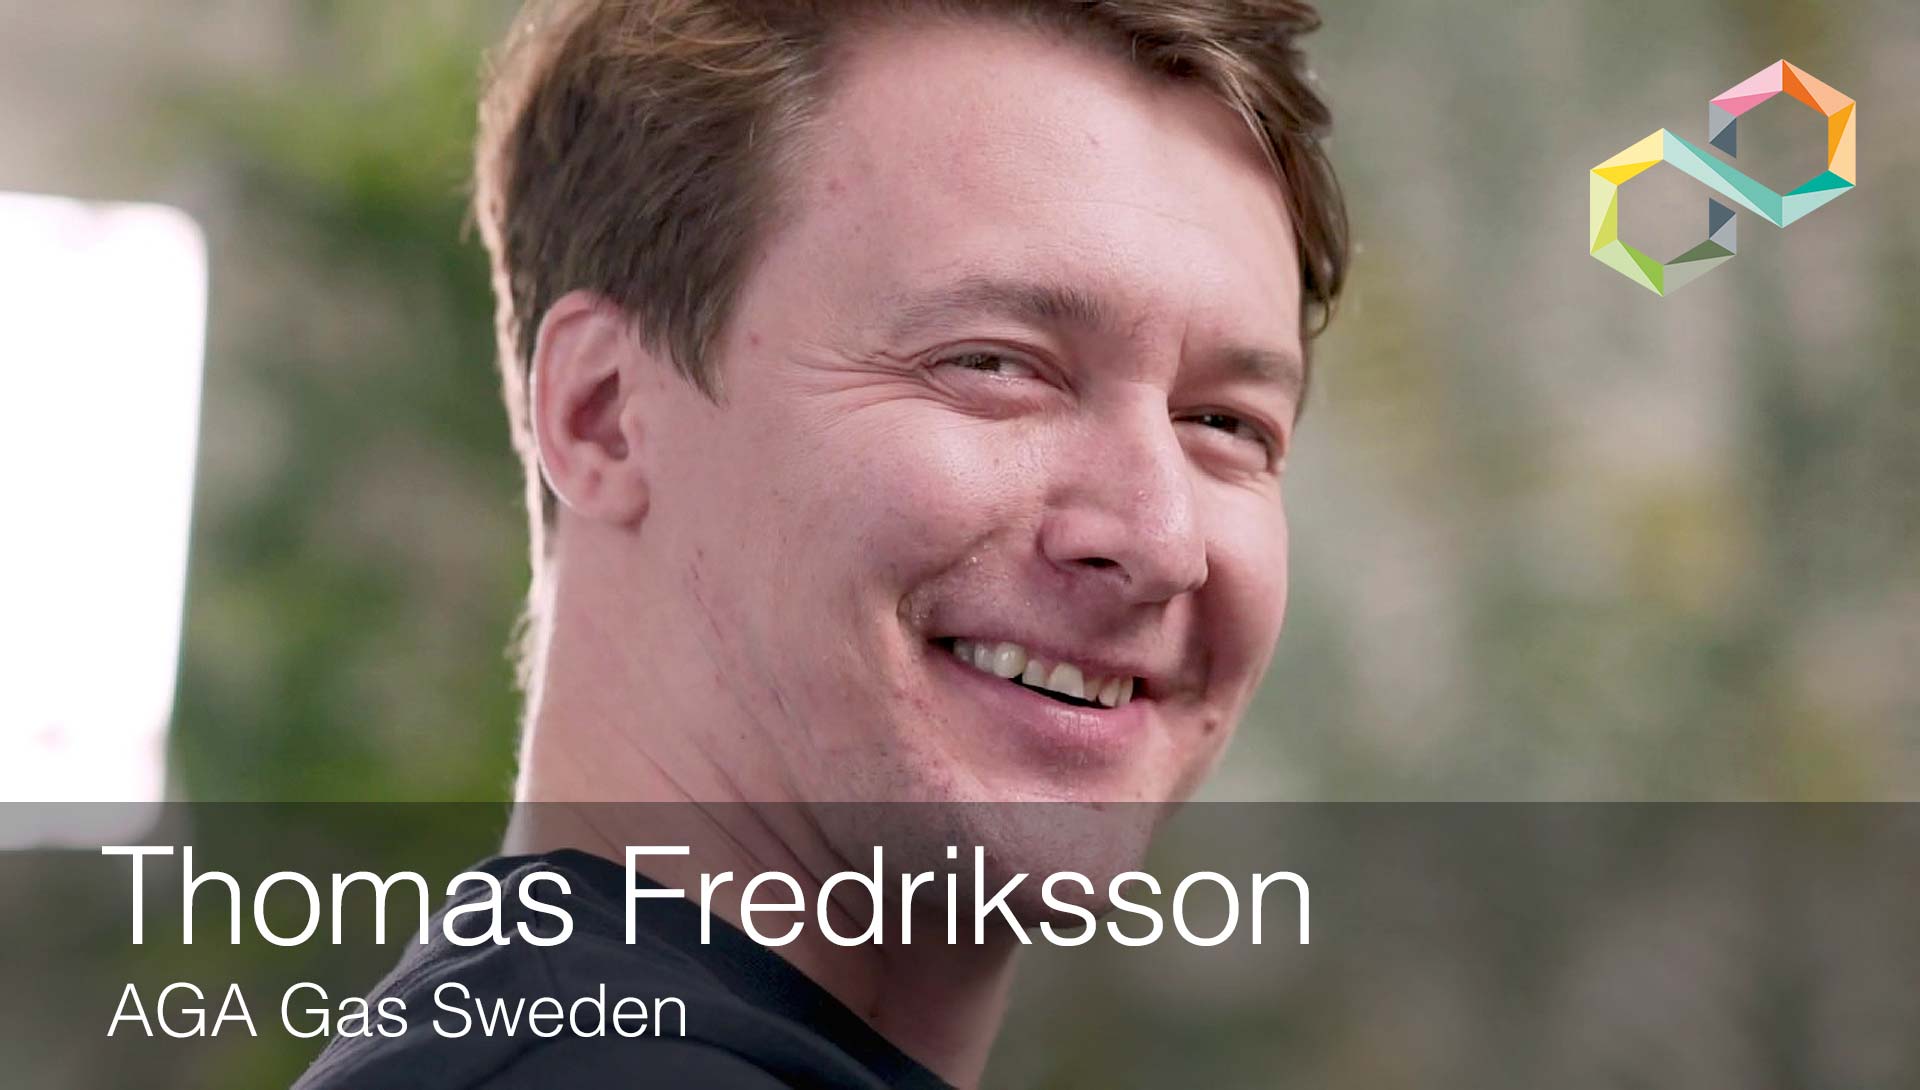 Thomas Fredriksson, AGA Gas Sweden